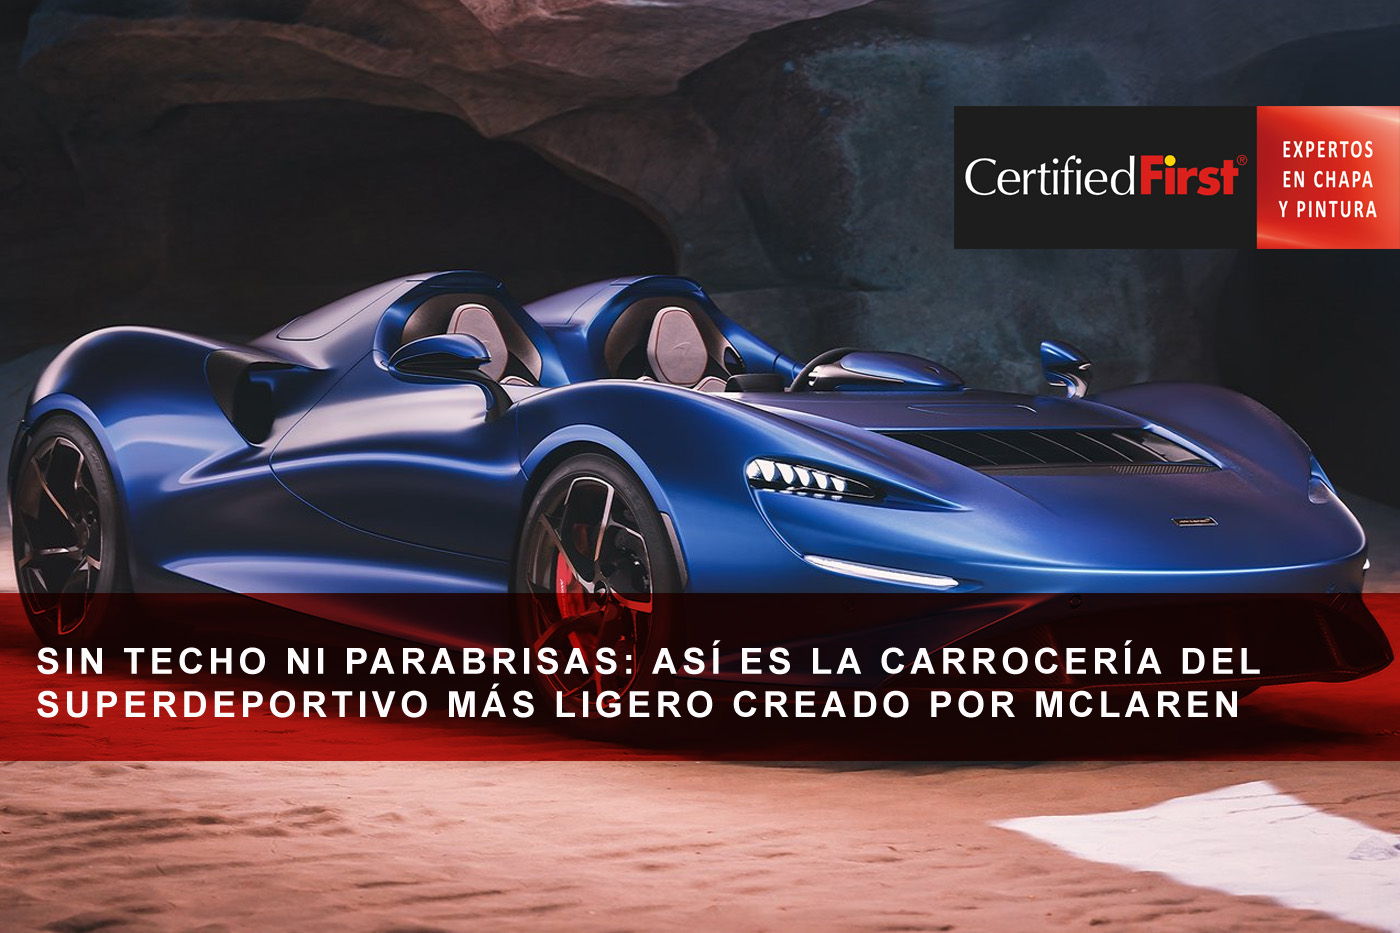 Sin techo ni parabrisas: así es la carrocería del superdeportivo más ligero creado por McLaren